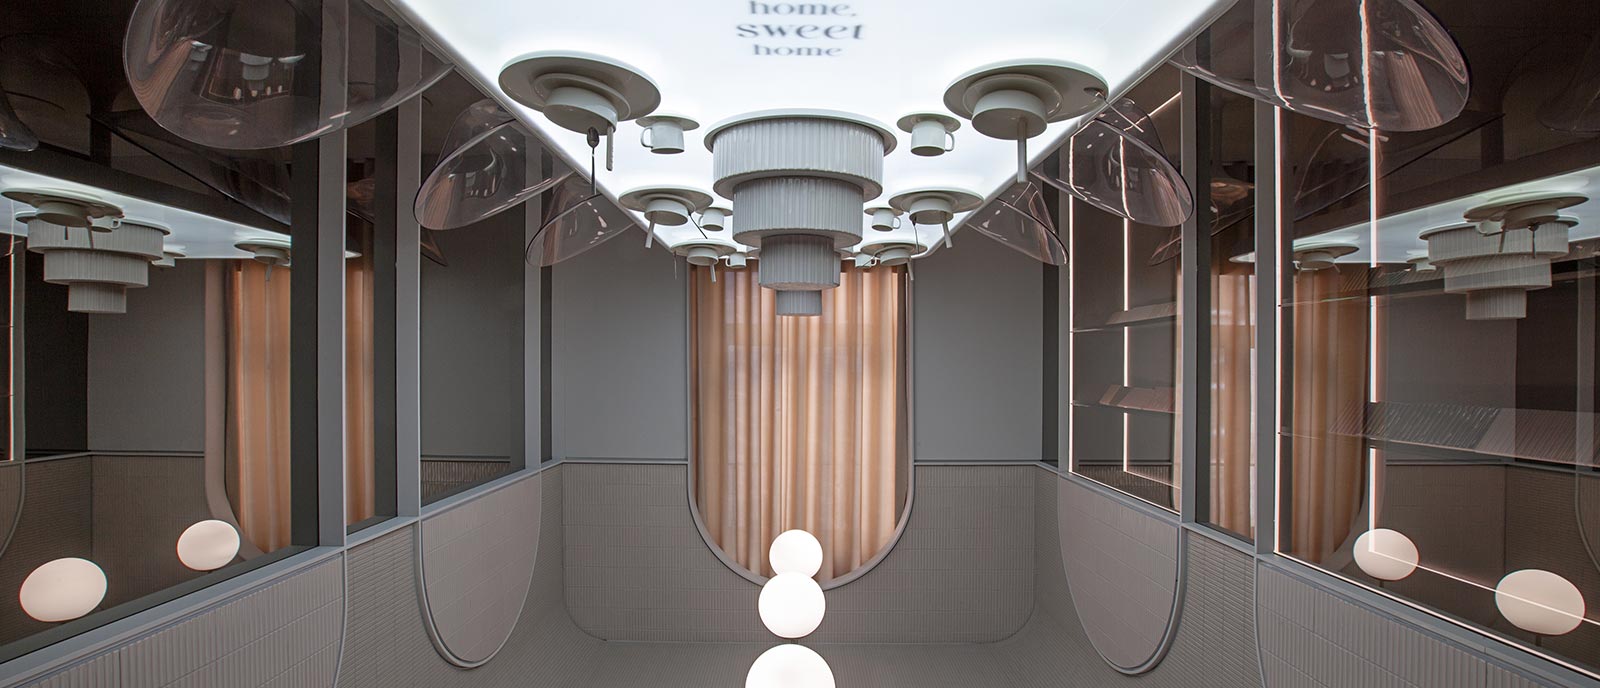 Espacio Wow Design – Conceptual «Home, Sweet Home»